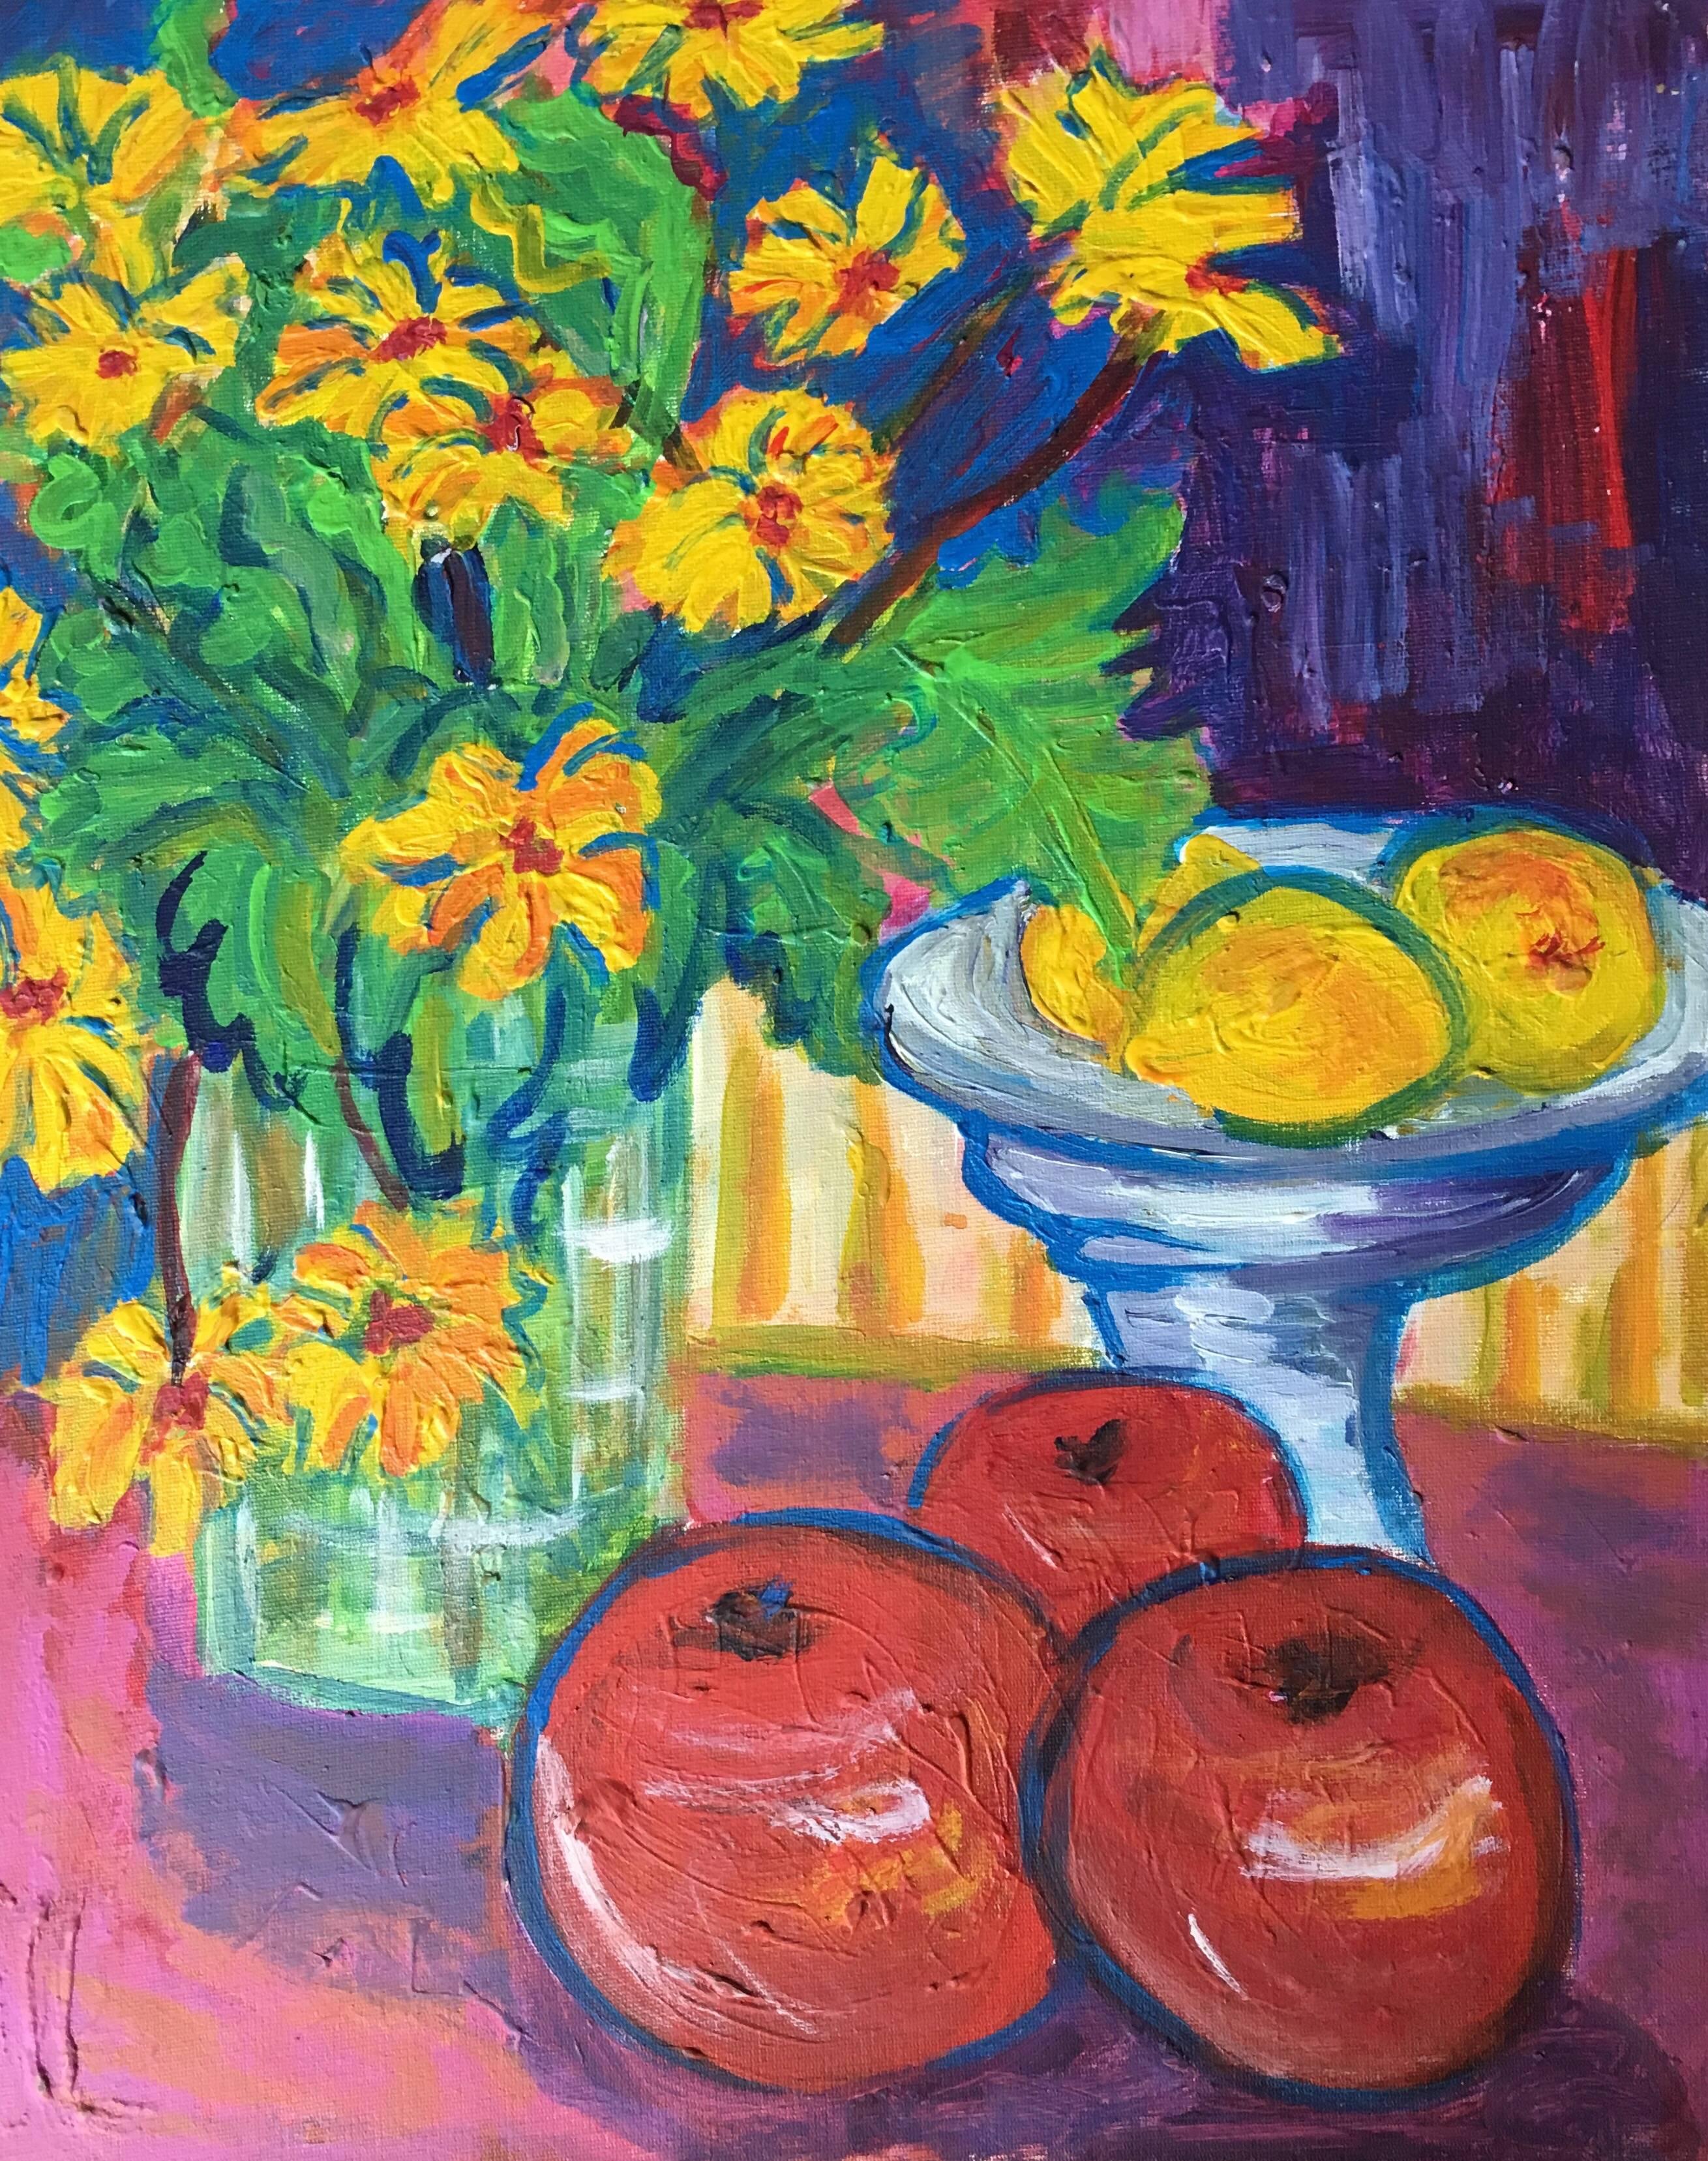 Impressionistisches Ölgemälde mit Zitronen, Zitronen und Äpfeln